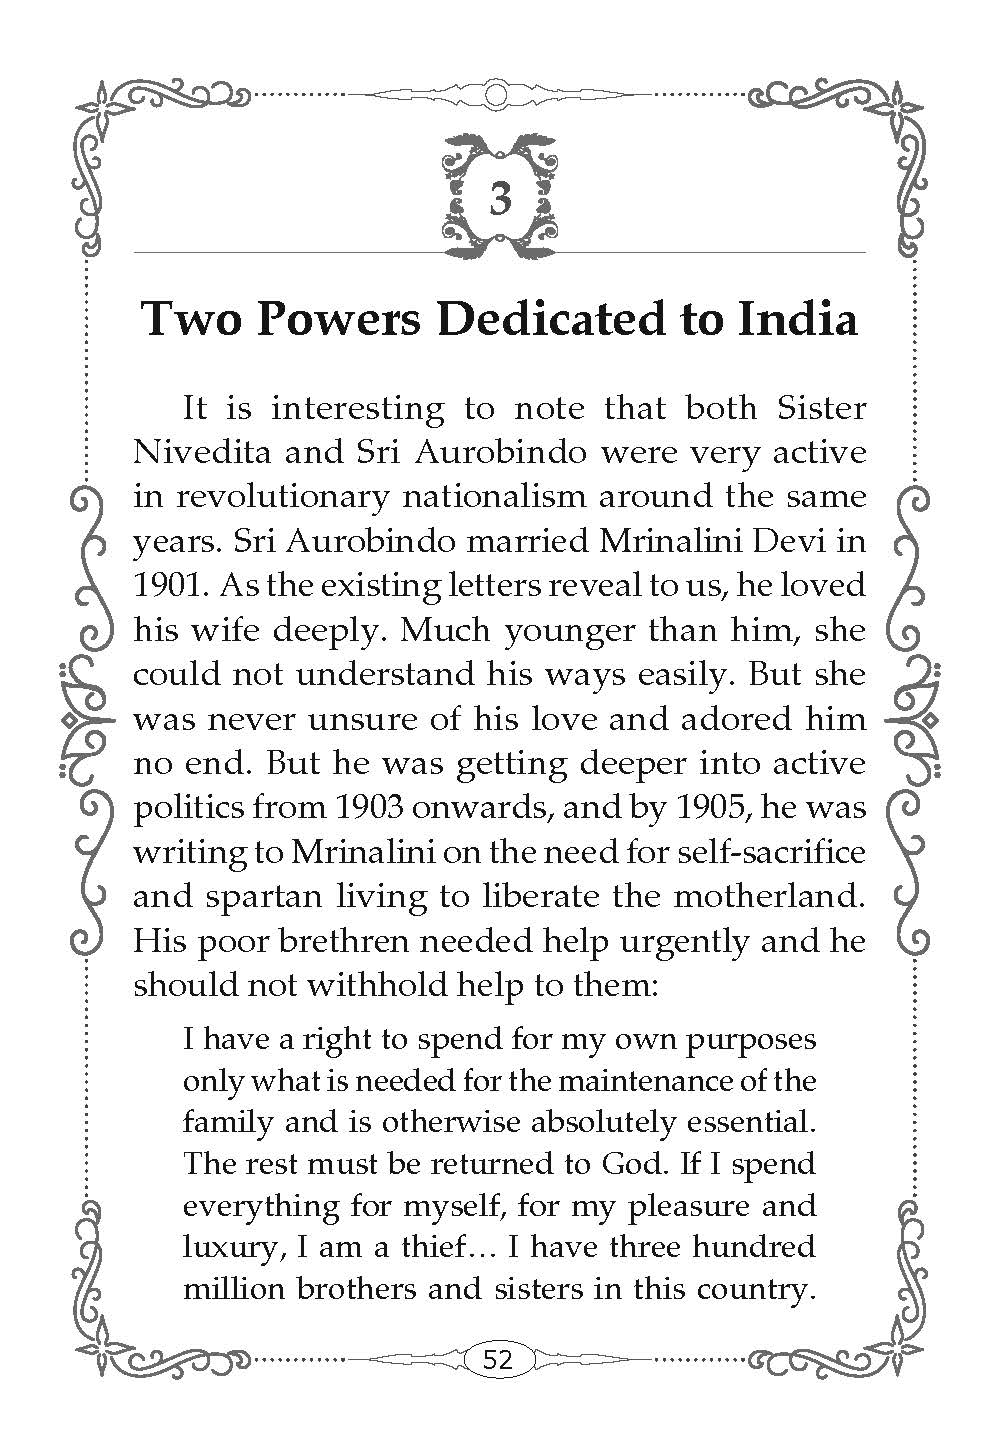 Sister Nivedita and Sri Aurobindo